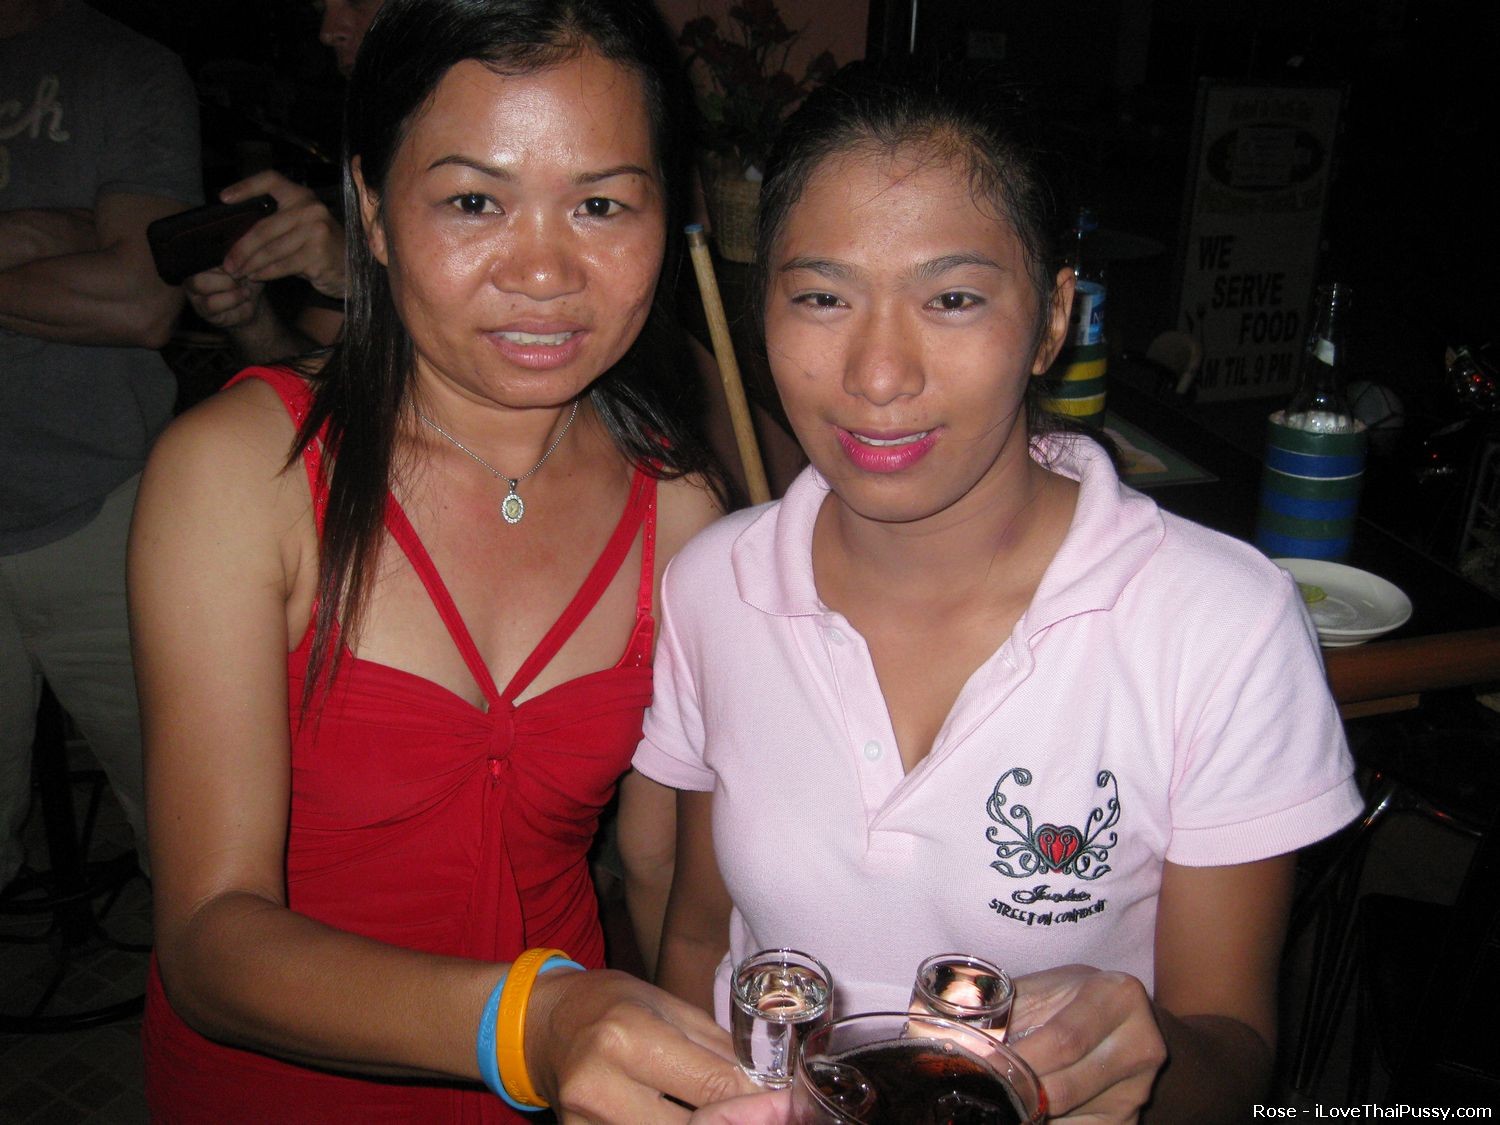 Des prostituées thaïlandaises sales baisées par un touriste sexuel suédois, salopes asiatiques interraciales
 #68382214